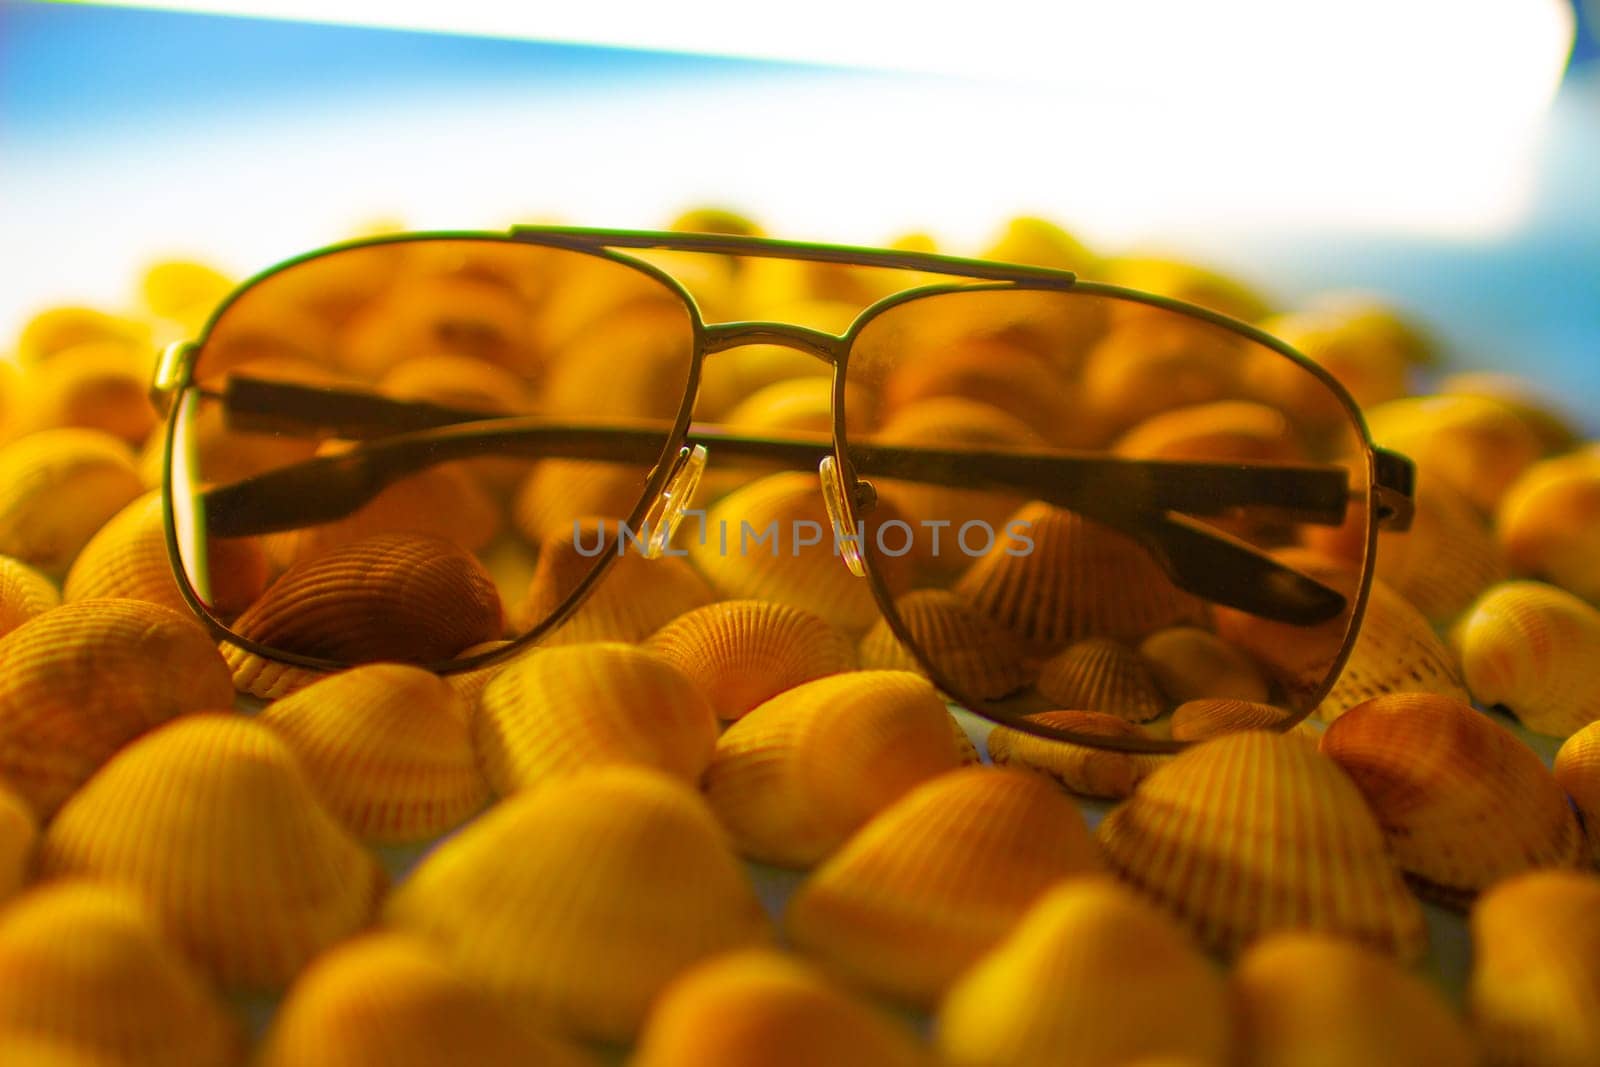 Sunglasses lie on orange seashells by VeronikaAngo